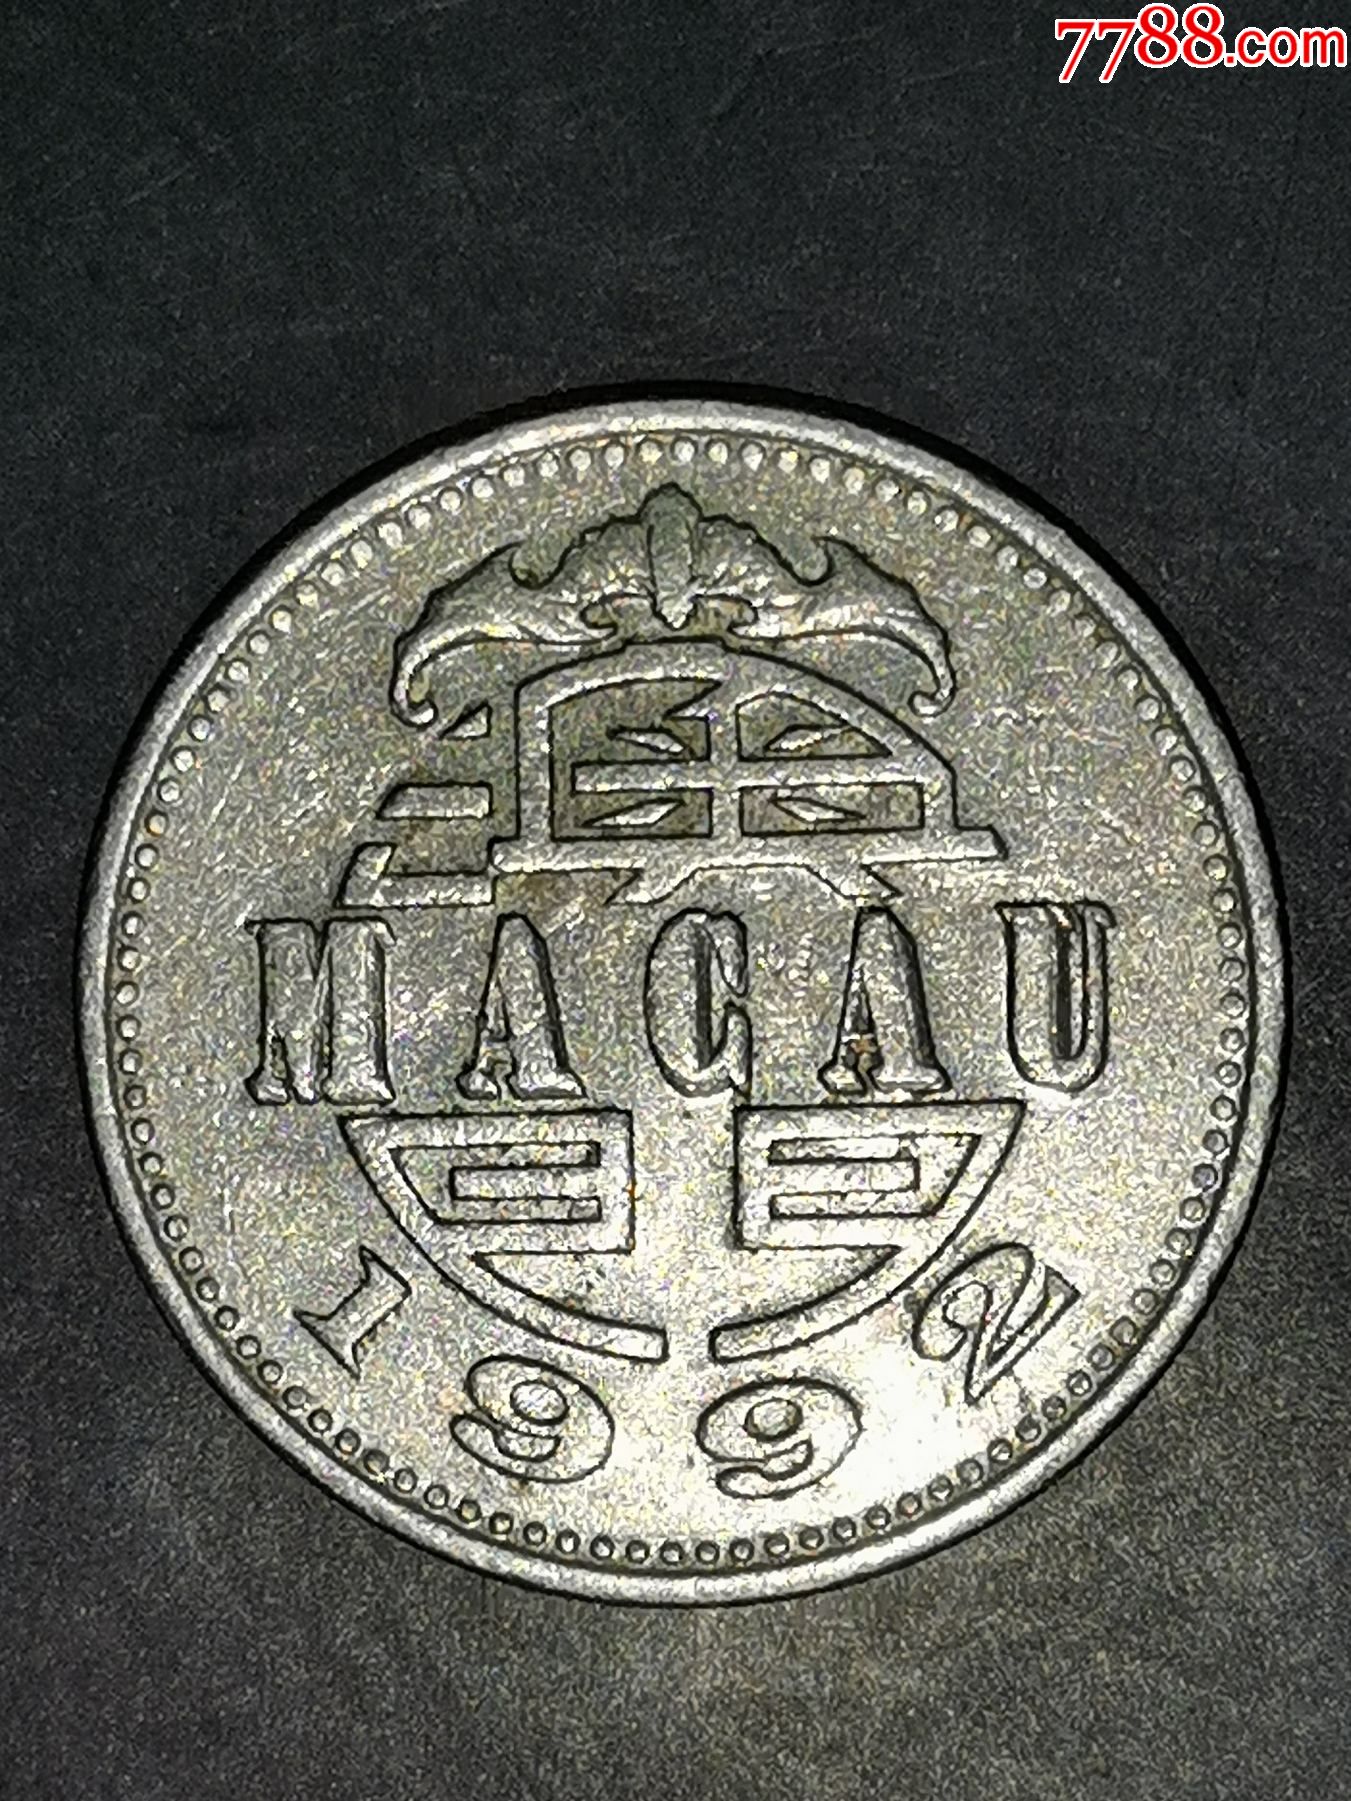 澳门1992年1元